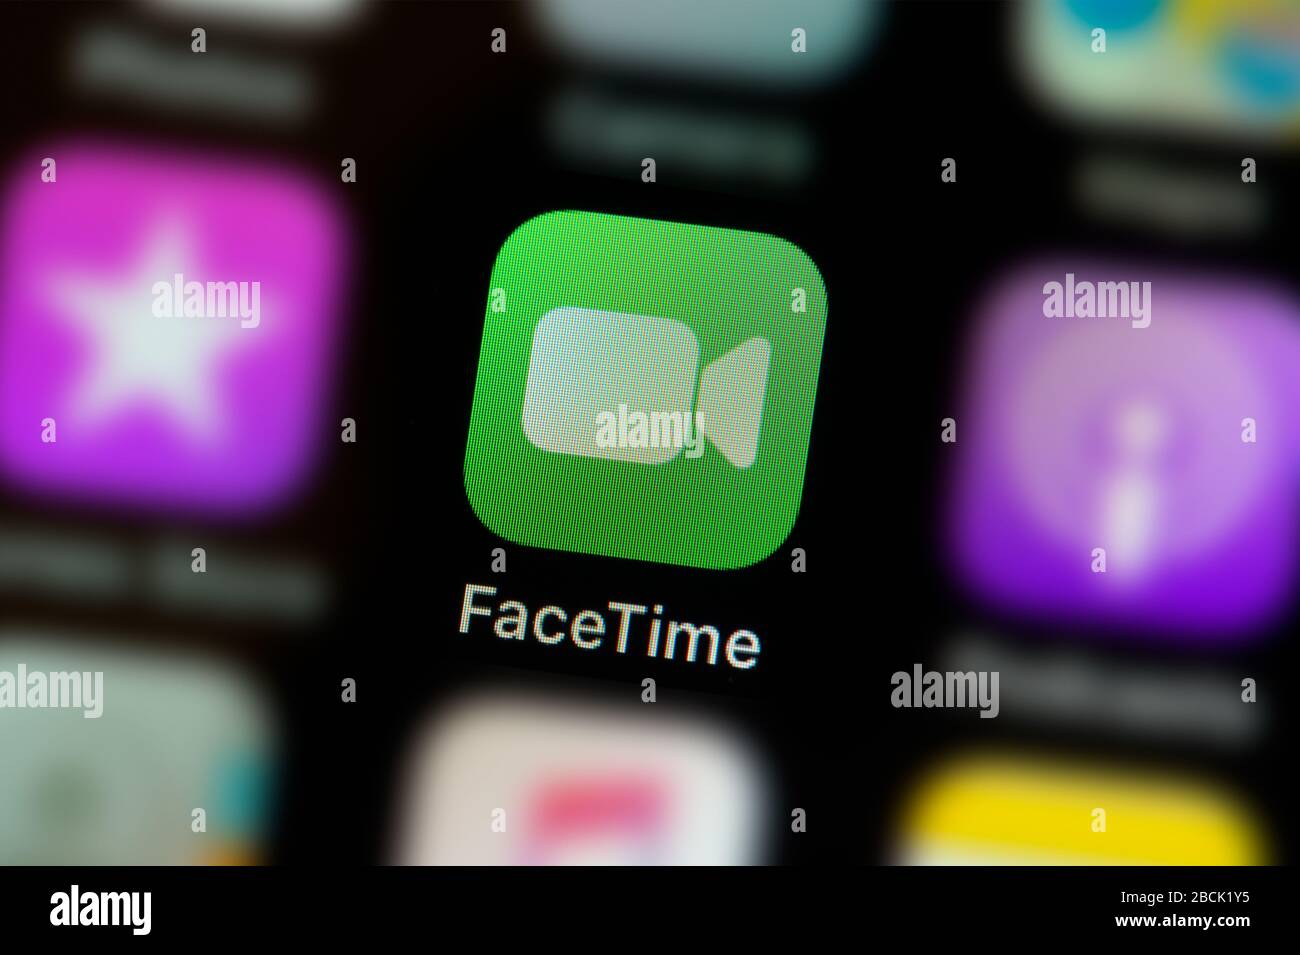 facetime app icon